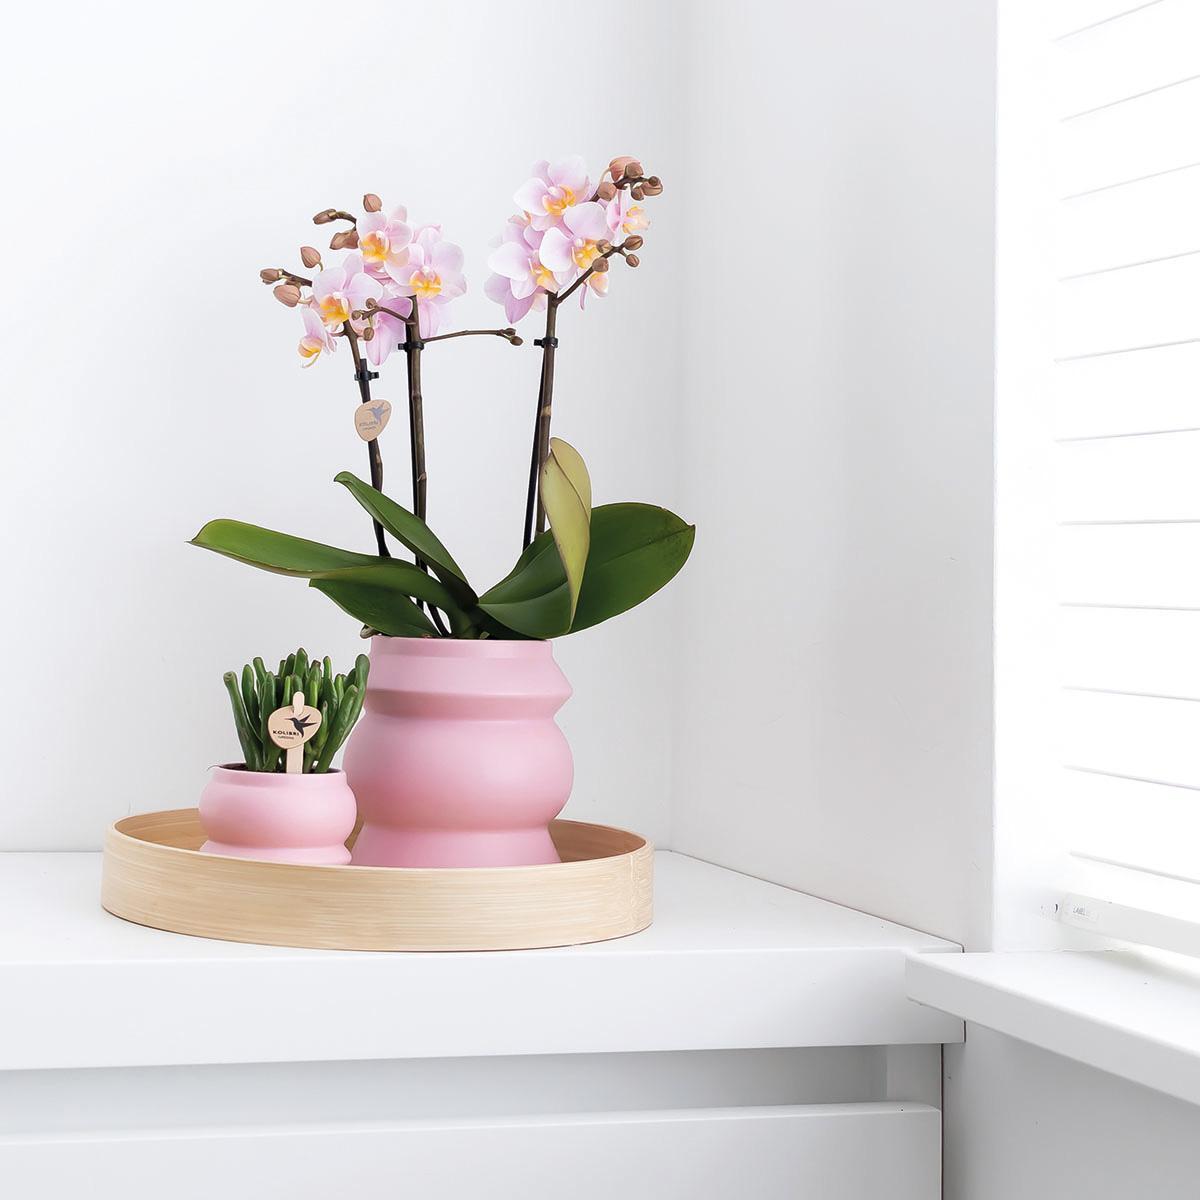 Kolibri Orchids | Roze phalaenopsis orchidee - Andorra - potmaat Ø9cm | bloeiende kamerplant - vers van de kweker Kolibri Orchids | COMBI DEAL van 2 Roze phalaenopsis orchideeën - Andorra - potmaat Ø9cm | bloeiende kamerplant - vers van de kweker